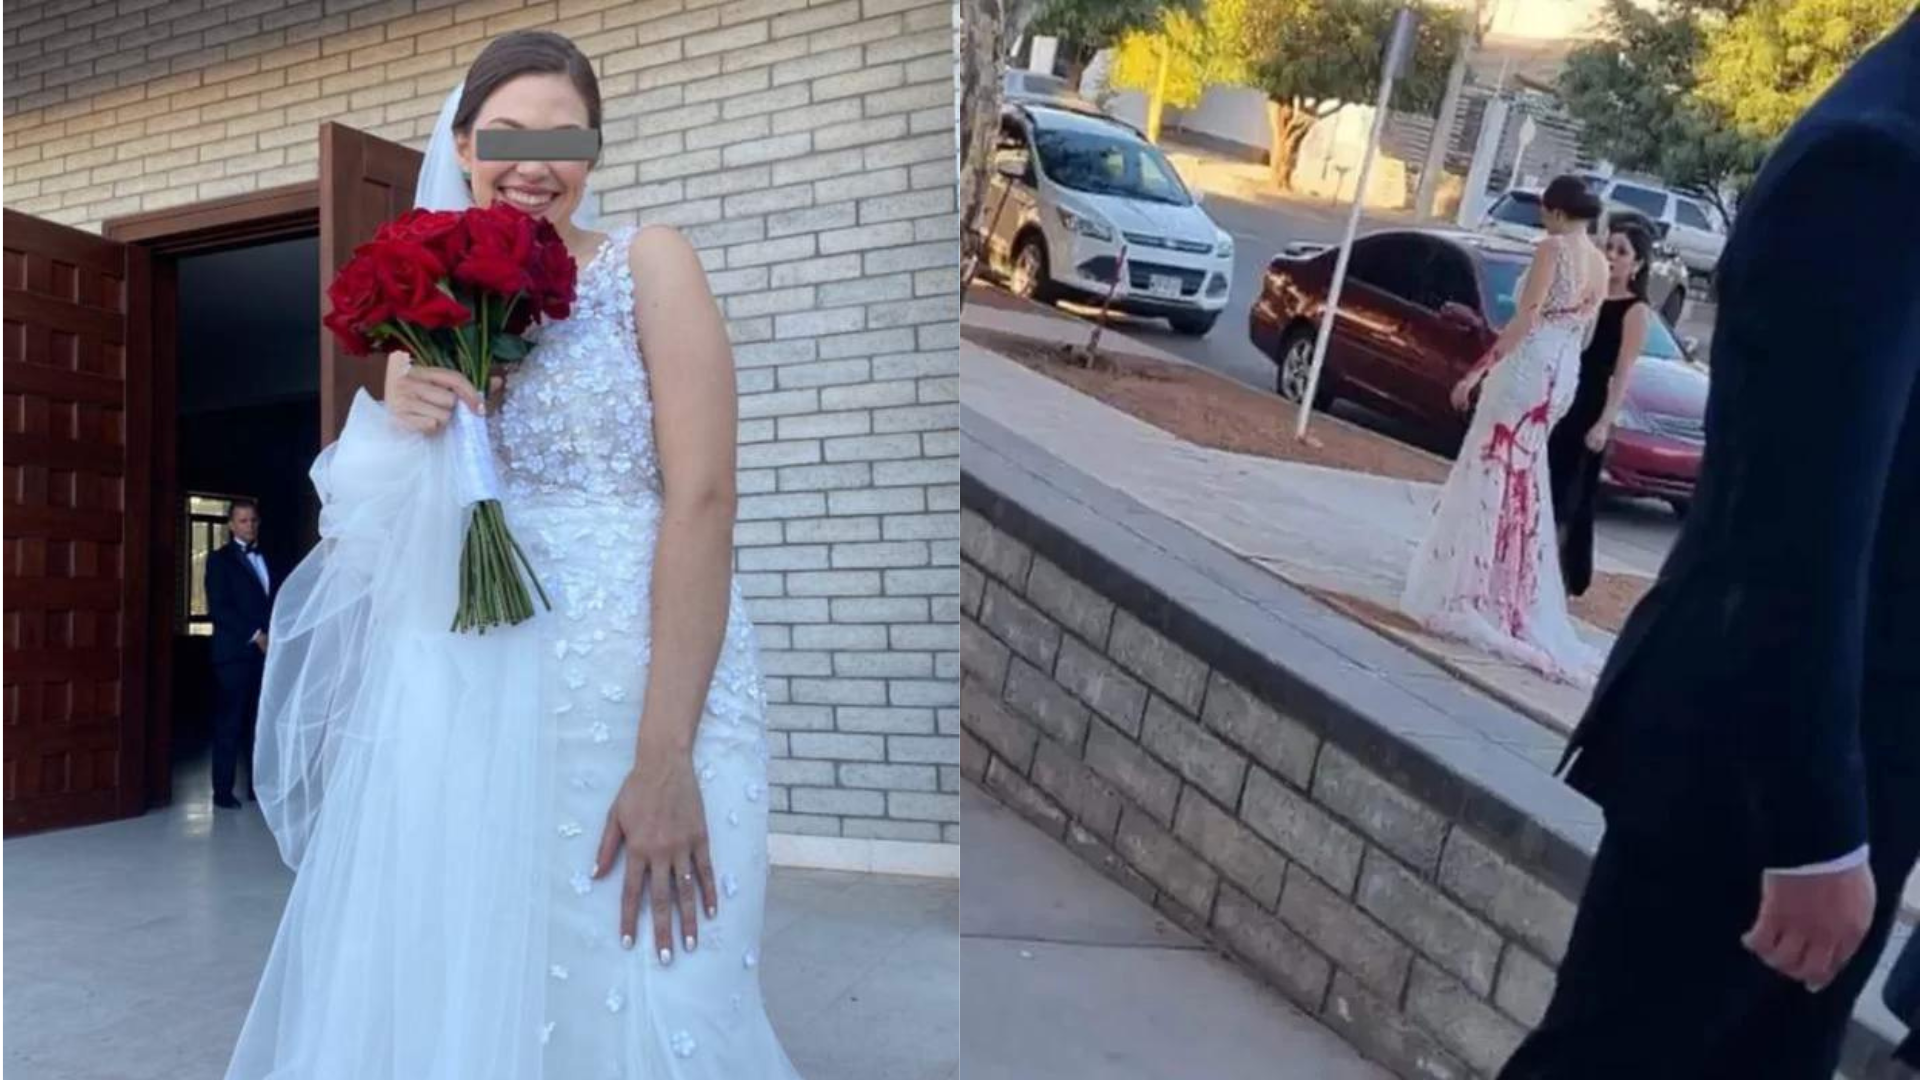 Sogra contrata pessoas para jogarem tinta vermelha no vestido da noiva pouco antes de cerimônia; saiba desfecho